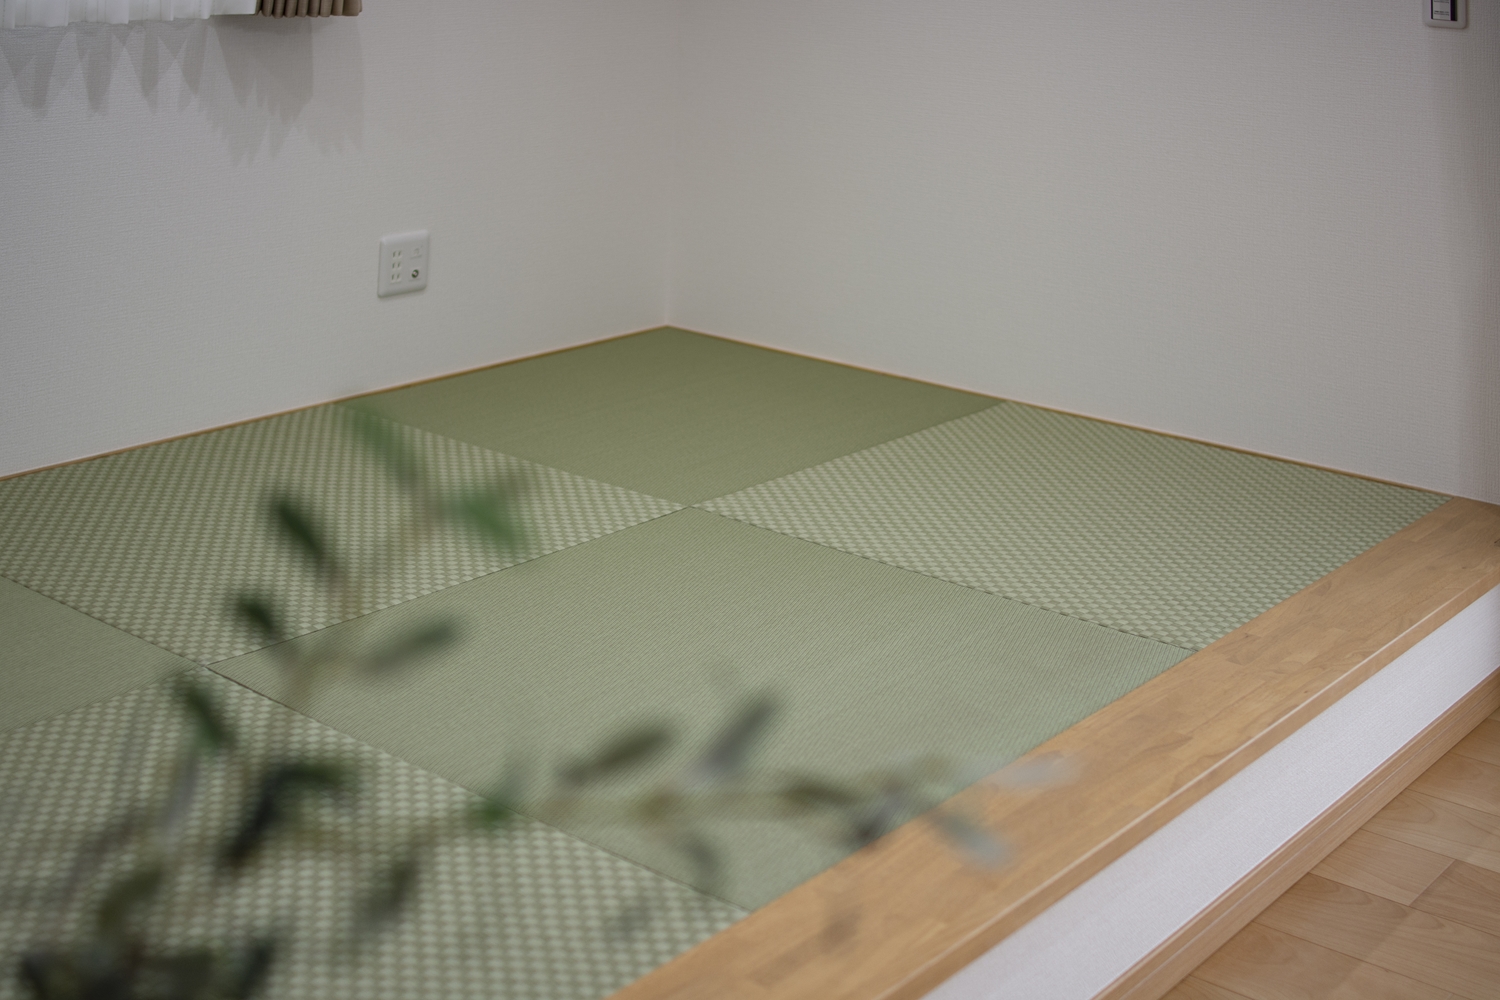 色味とデザインの違うグリーンの畳を市松敷きに並べて、モダンな印象に仕上がりました。